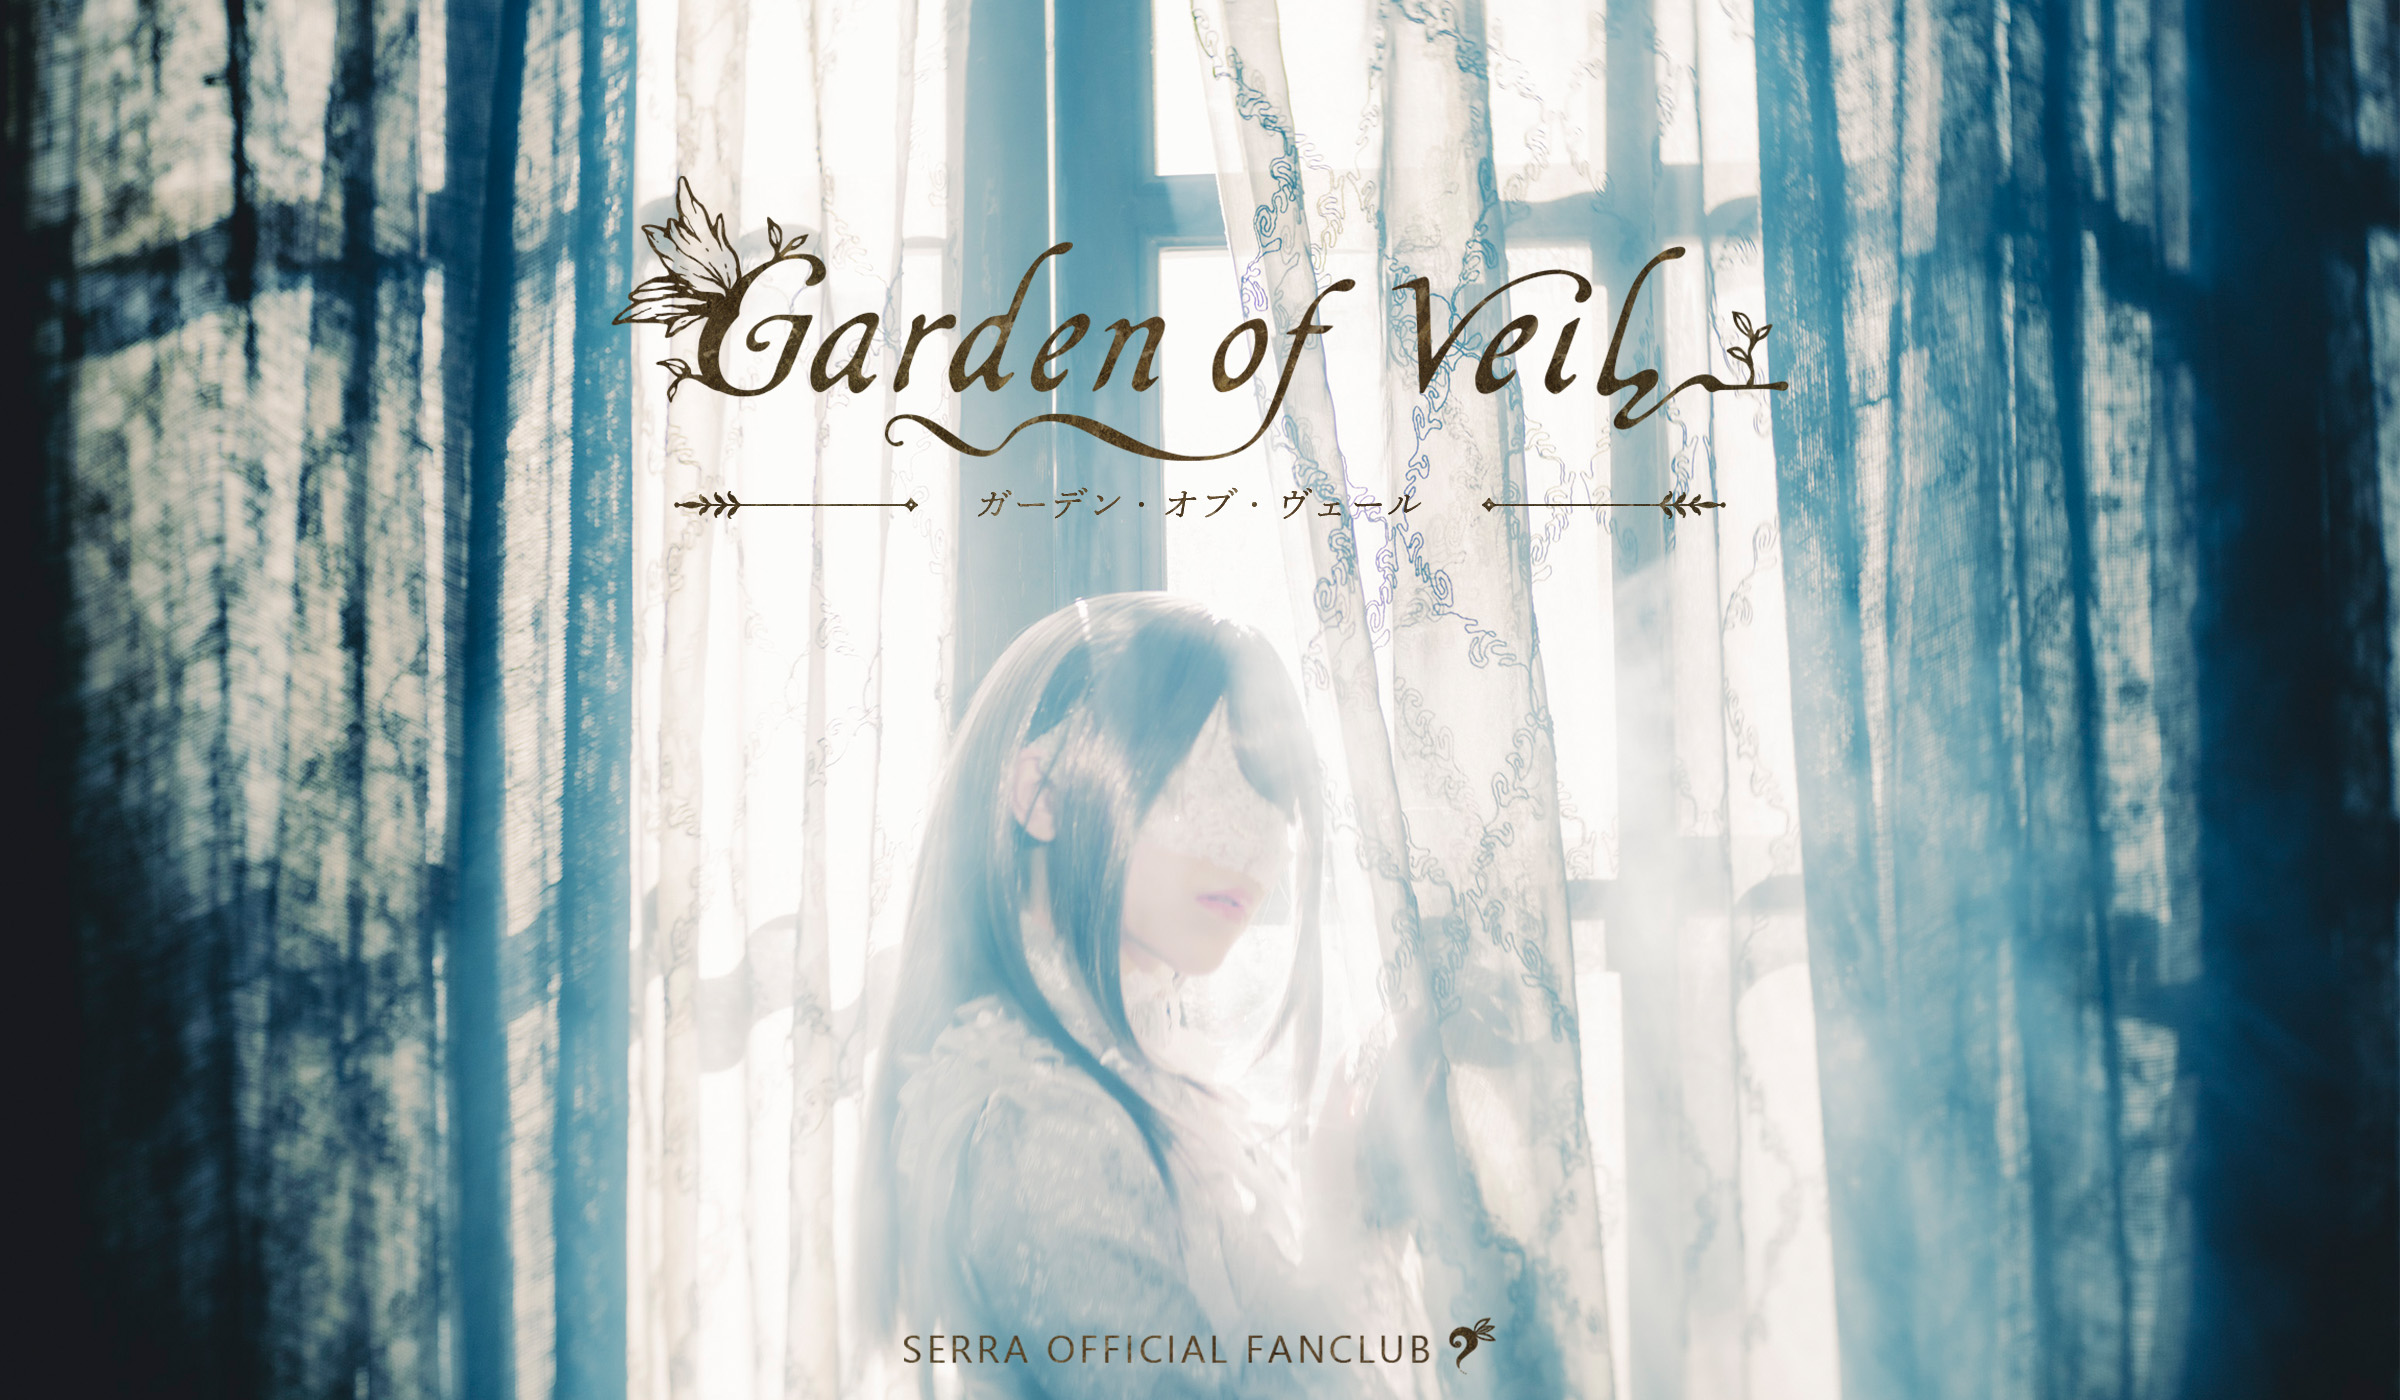 SERRA│SERRA OFFICIAL FANCLUB - Garden of Veil -